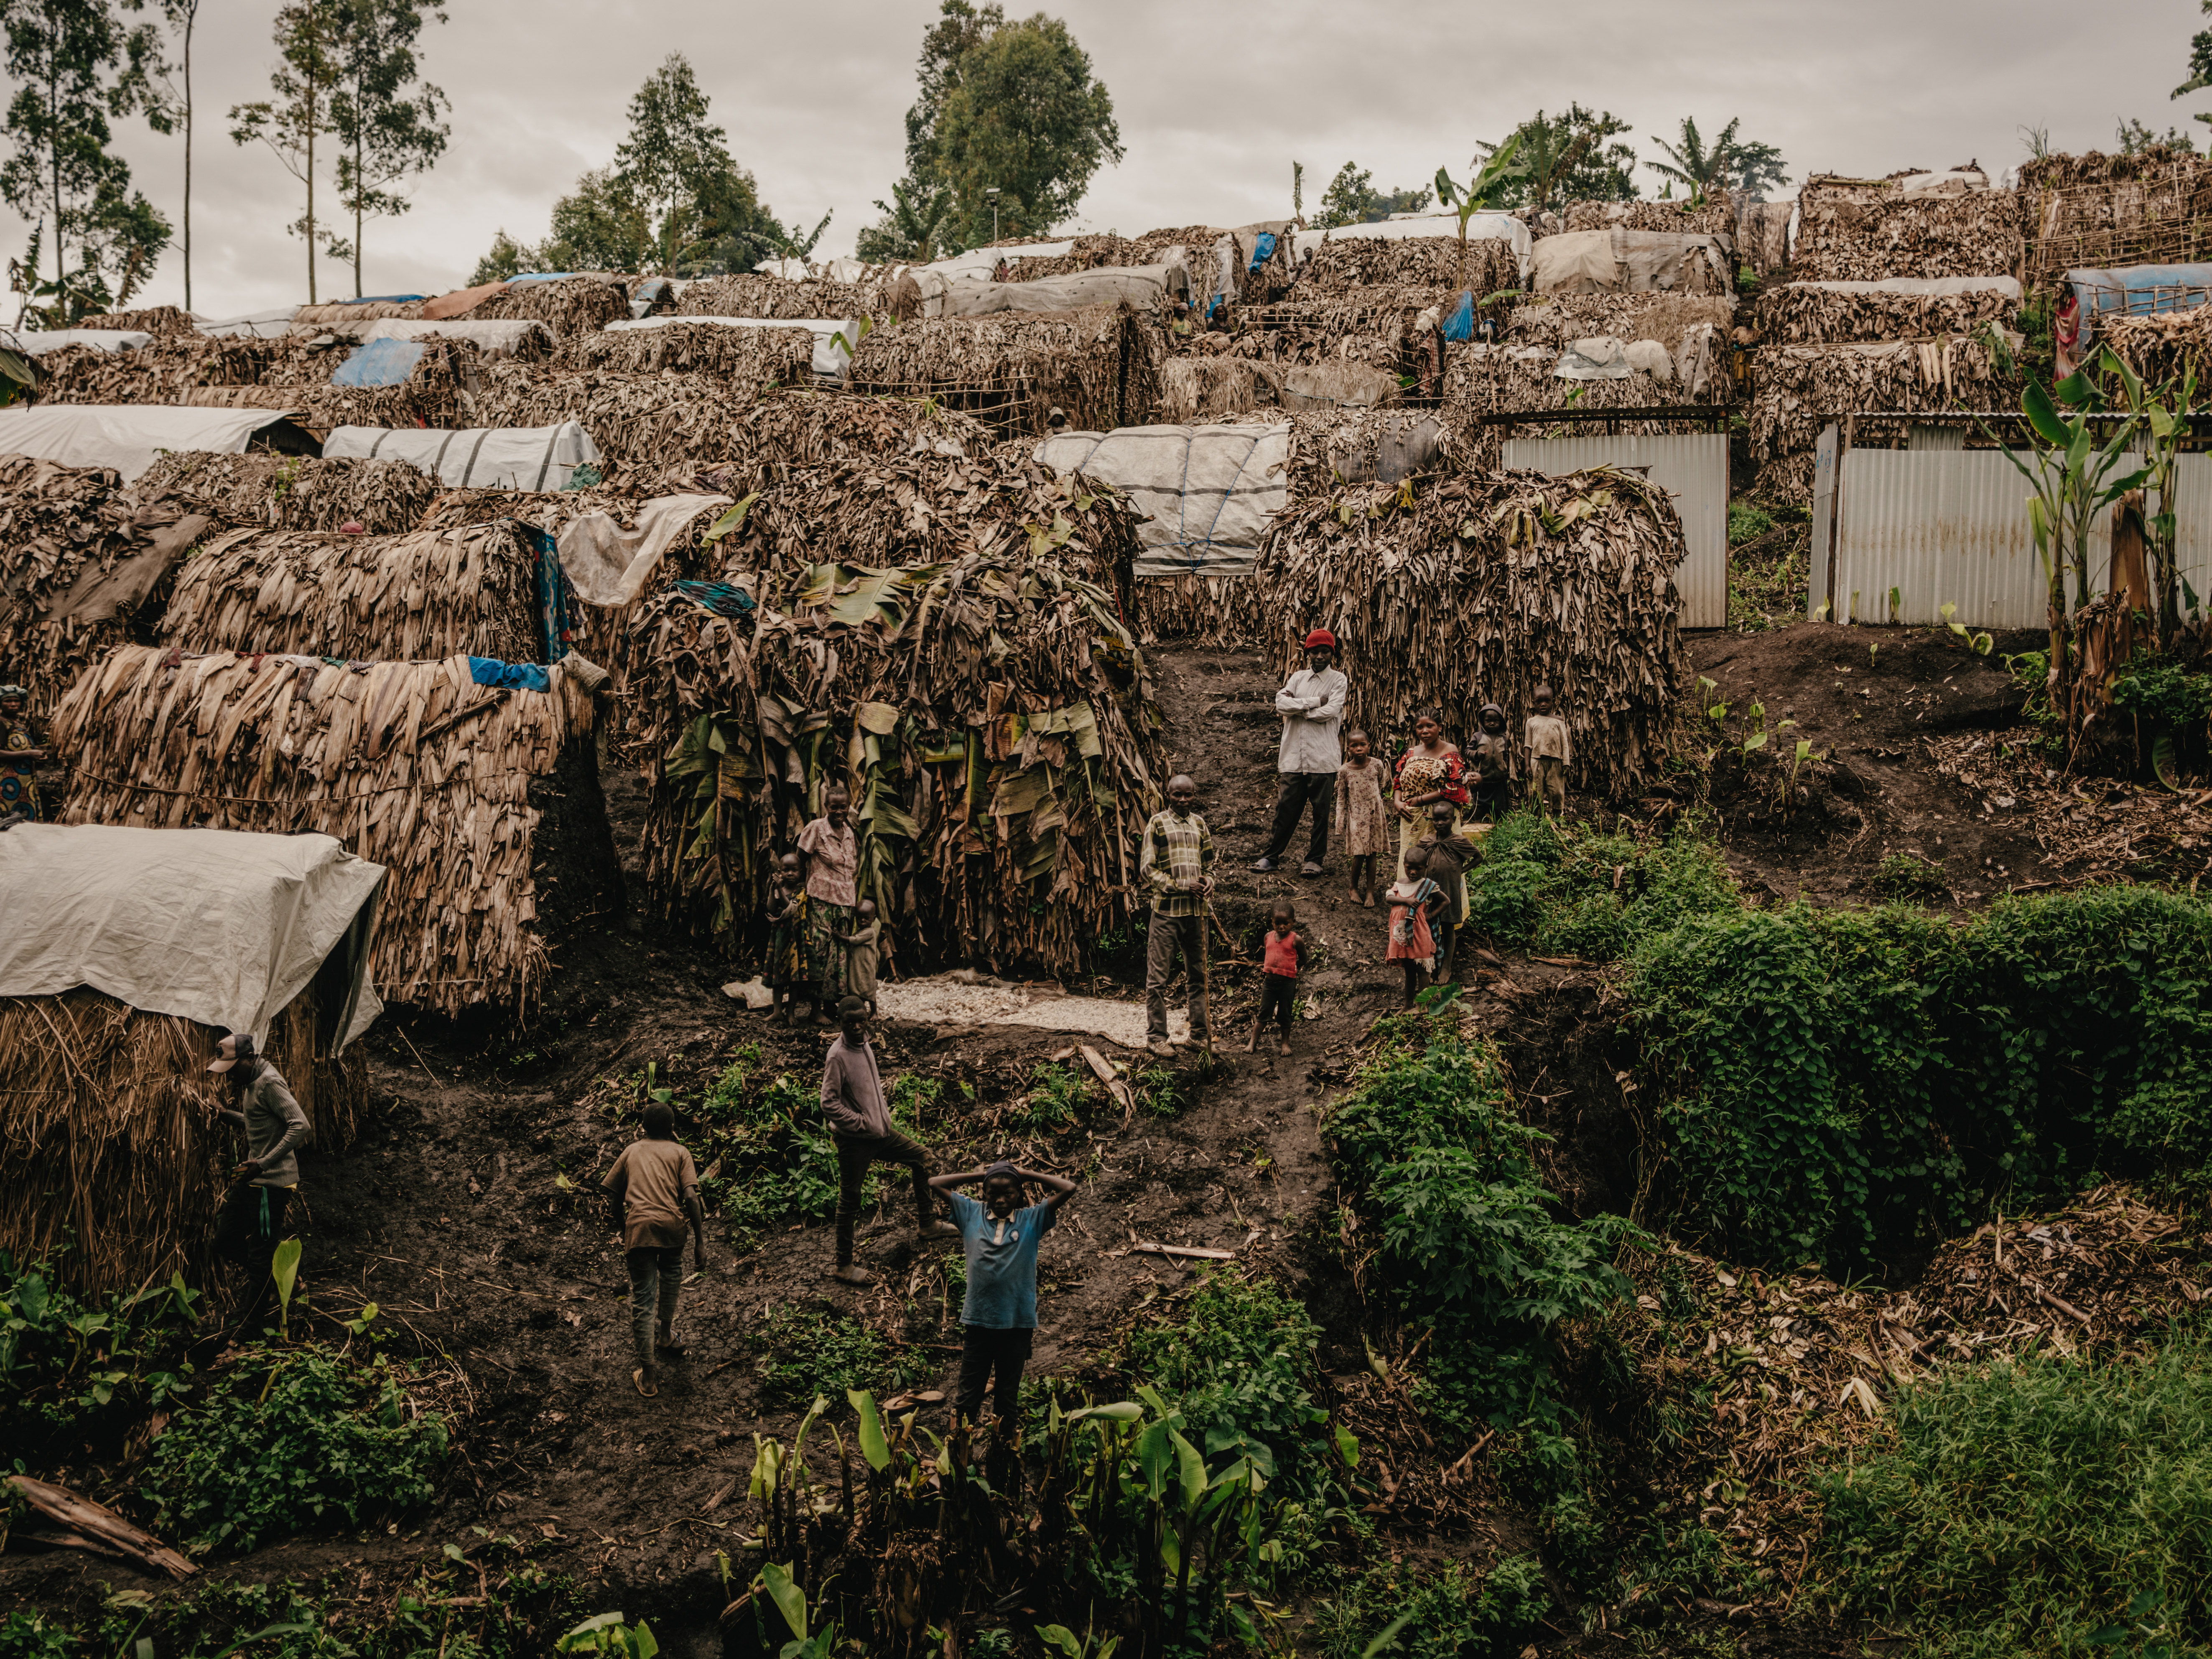 Campo de desplazados de Bugeri, Kivu Sur, este de República Democrática del Congo. ​
© Hugh Cunningham